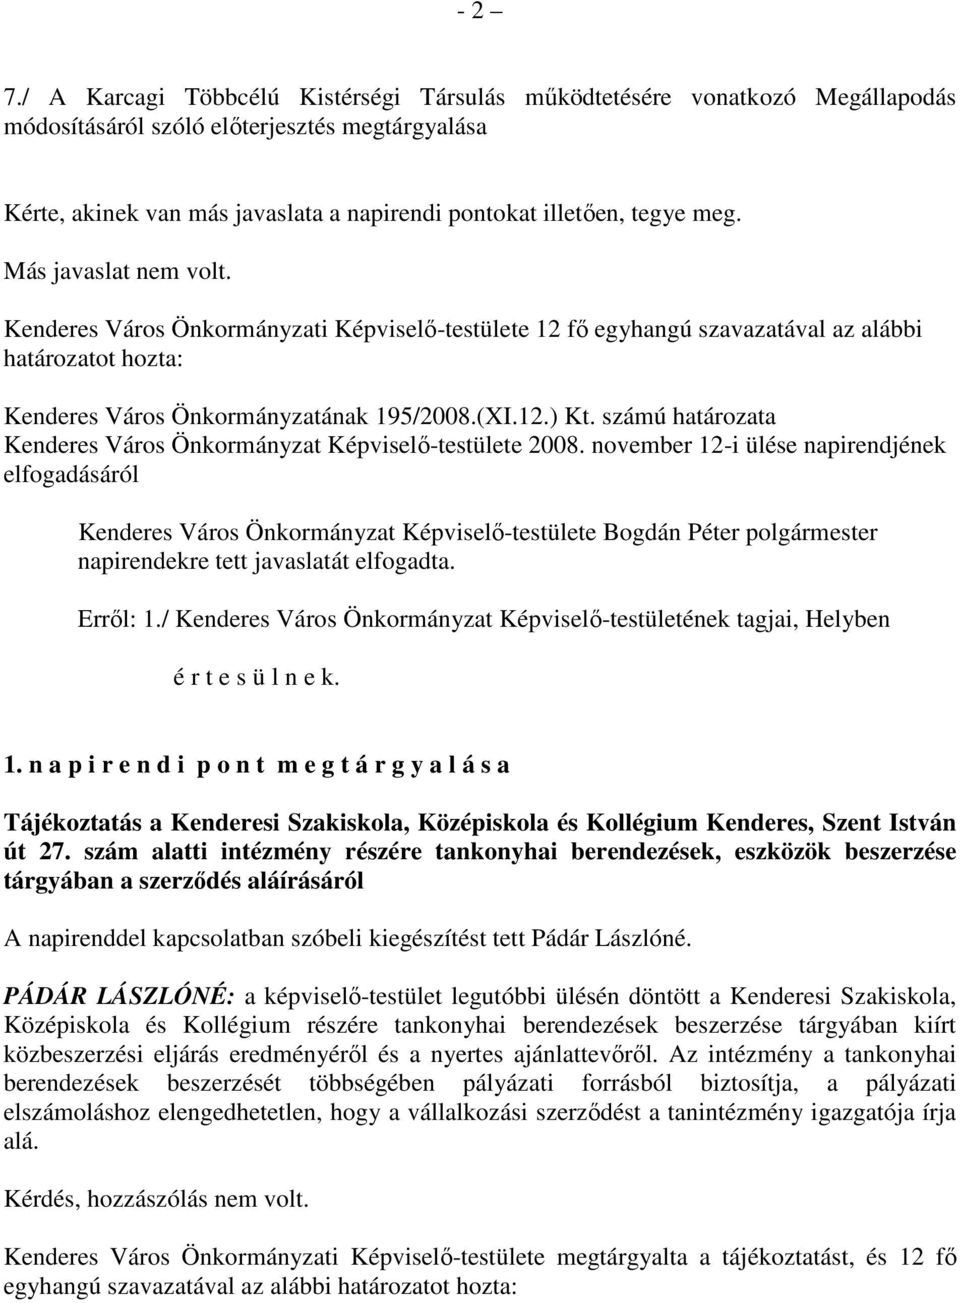 Más javaslat nem volt. Kenderes Város Önkormányzati Képviselı-testülete 12 fı egyhangú szavazatával az alábbi határozatot hozta: Kenderes Város Önkormányzatának 195/2008.(XI.12.) Kt.